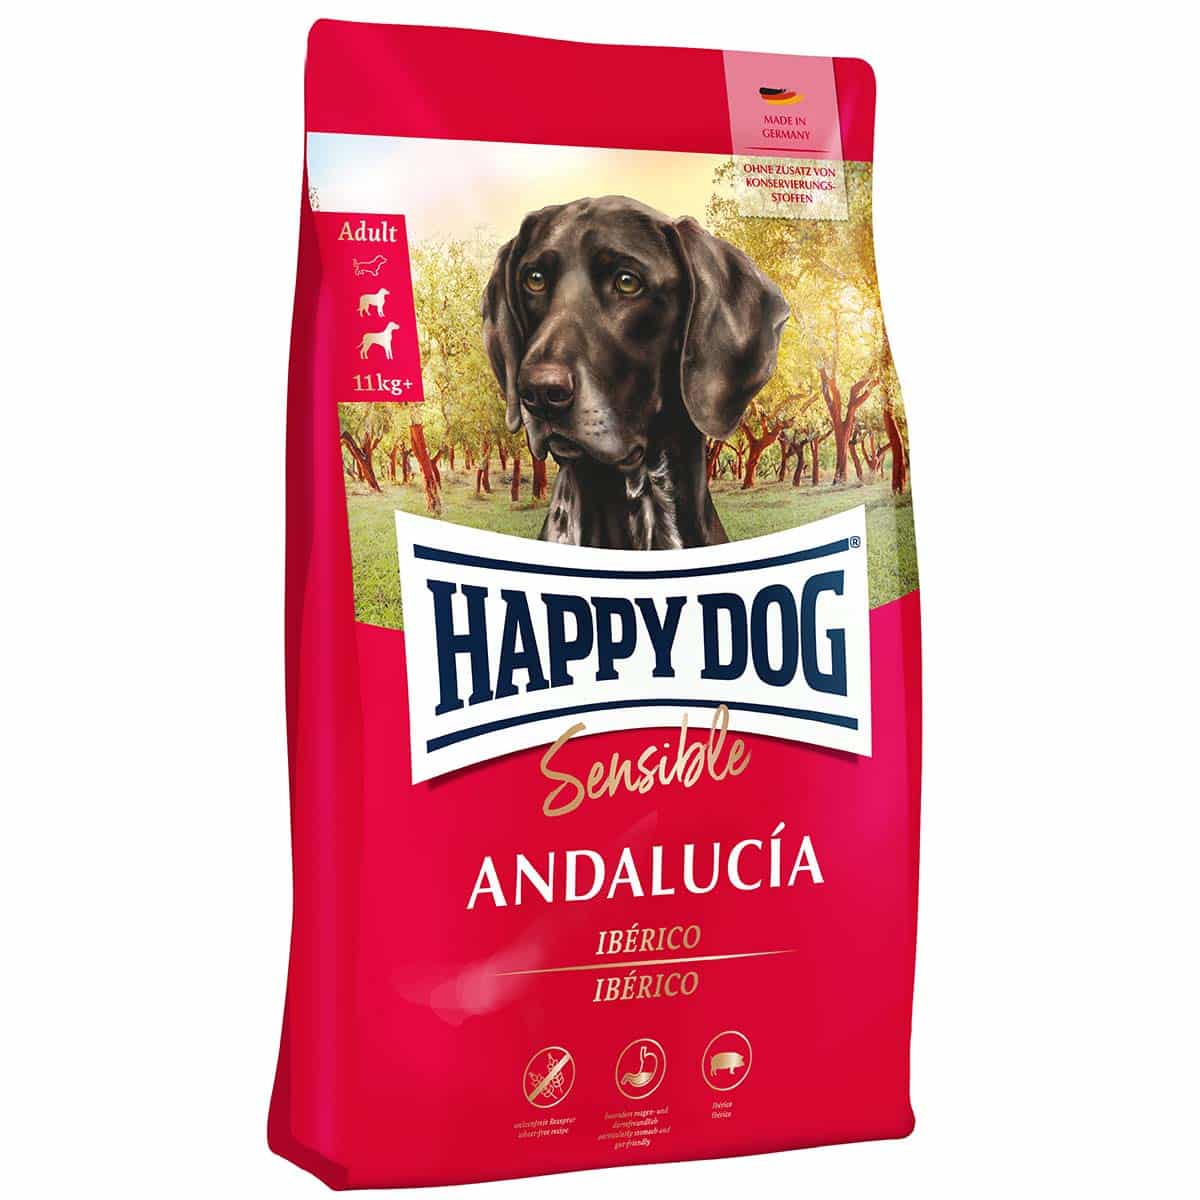 Happy Dog Supreme Sensible Andalucía 1kg